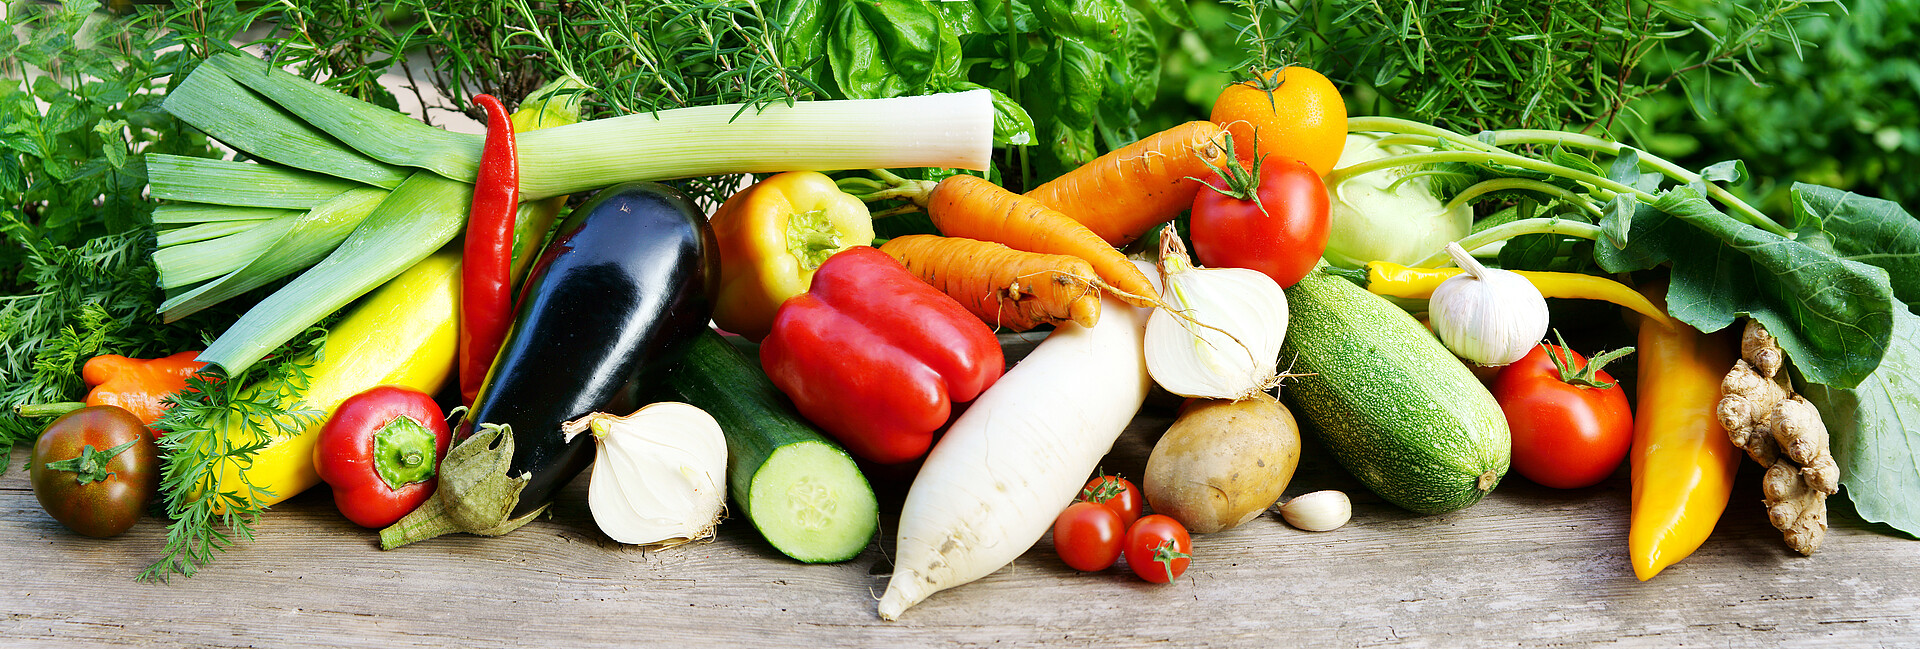 Sommergemüse (Tomaten, Zucchini, Karotten, Lauch, Paprika, Gurken) und Kräuter im Hintergrund